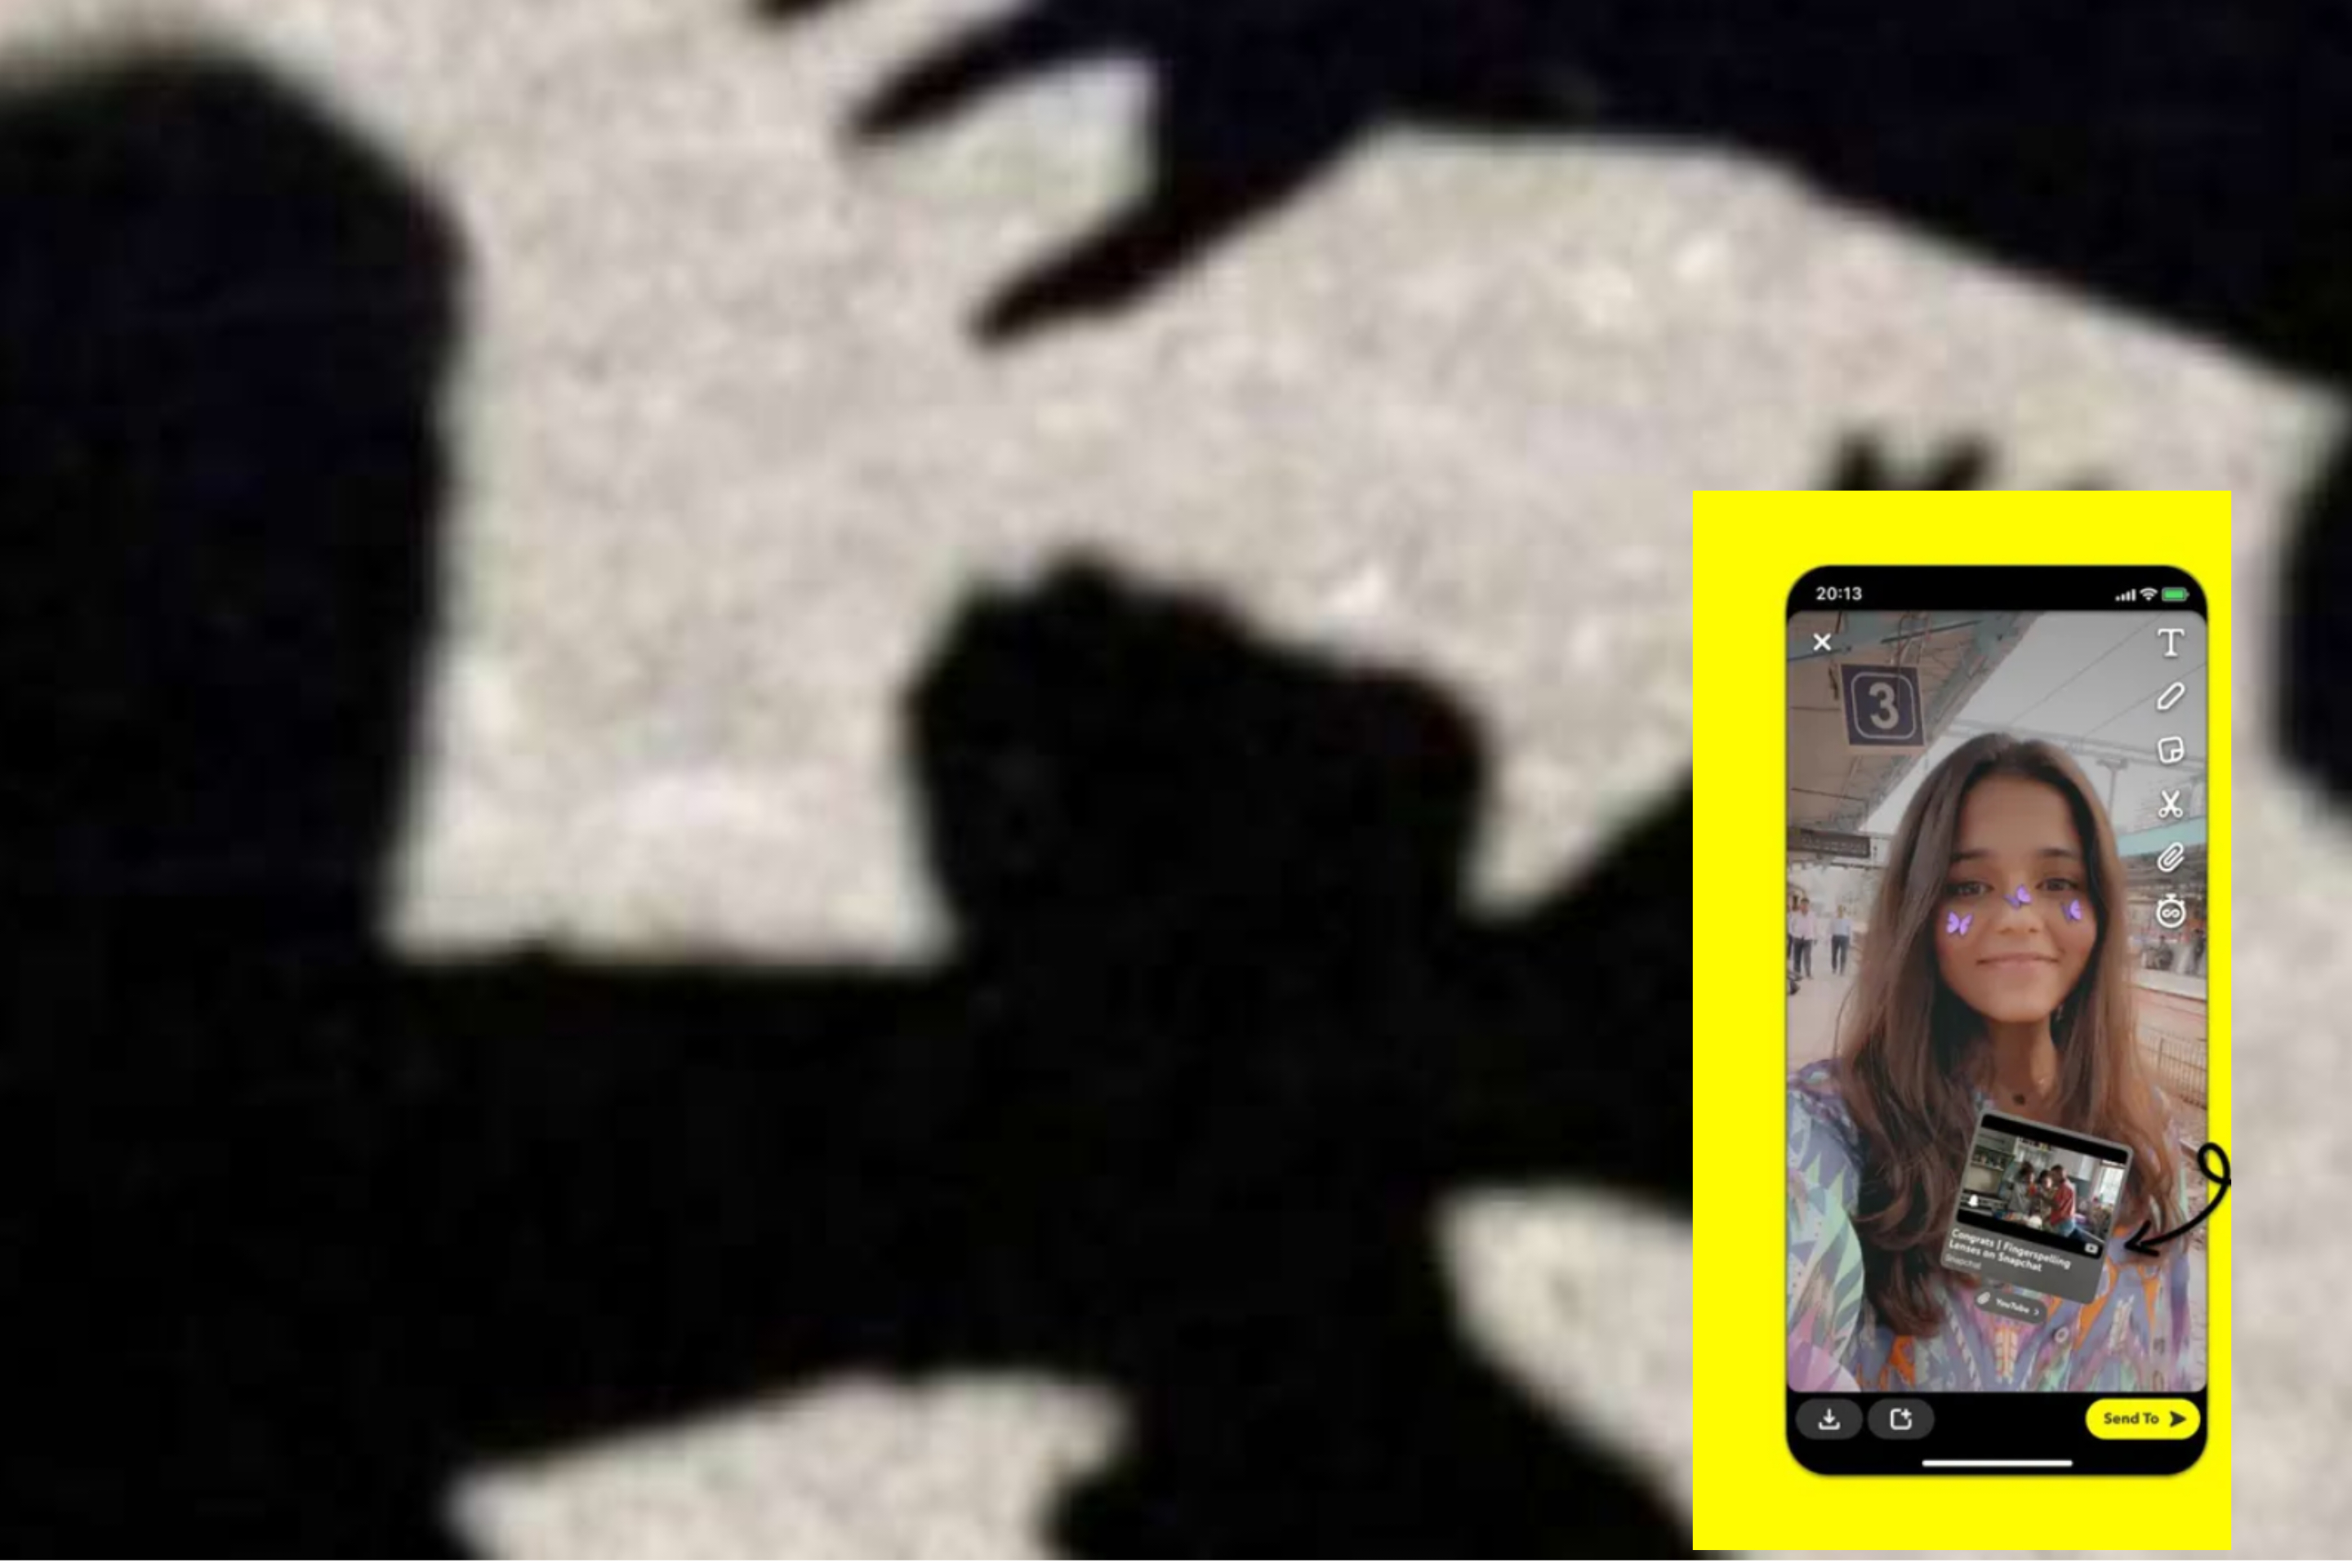 Do takonte vajzën e Snapchat-it, por i dalin dy burra dhe e rrahin